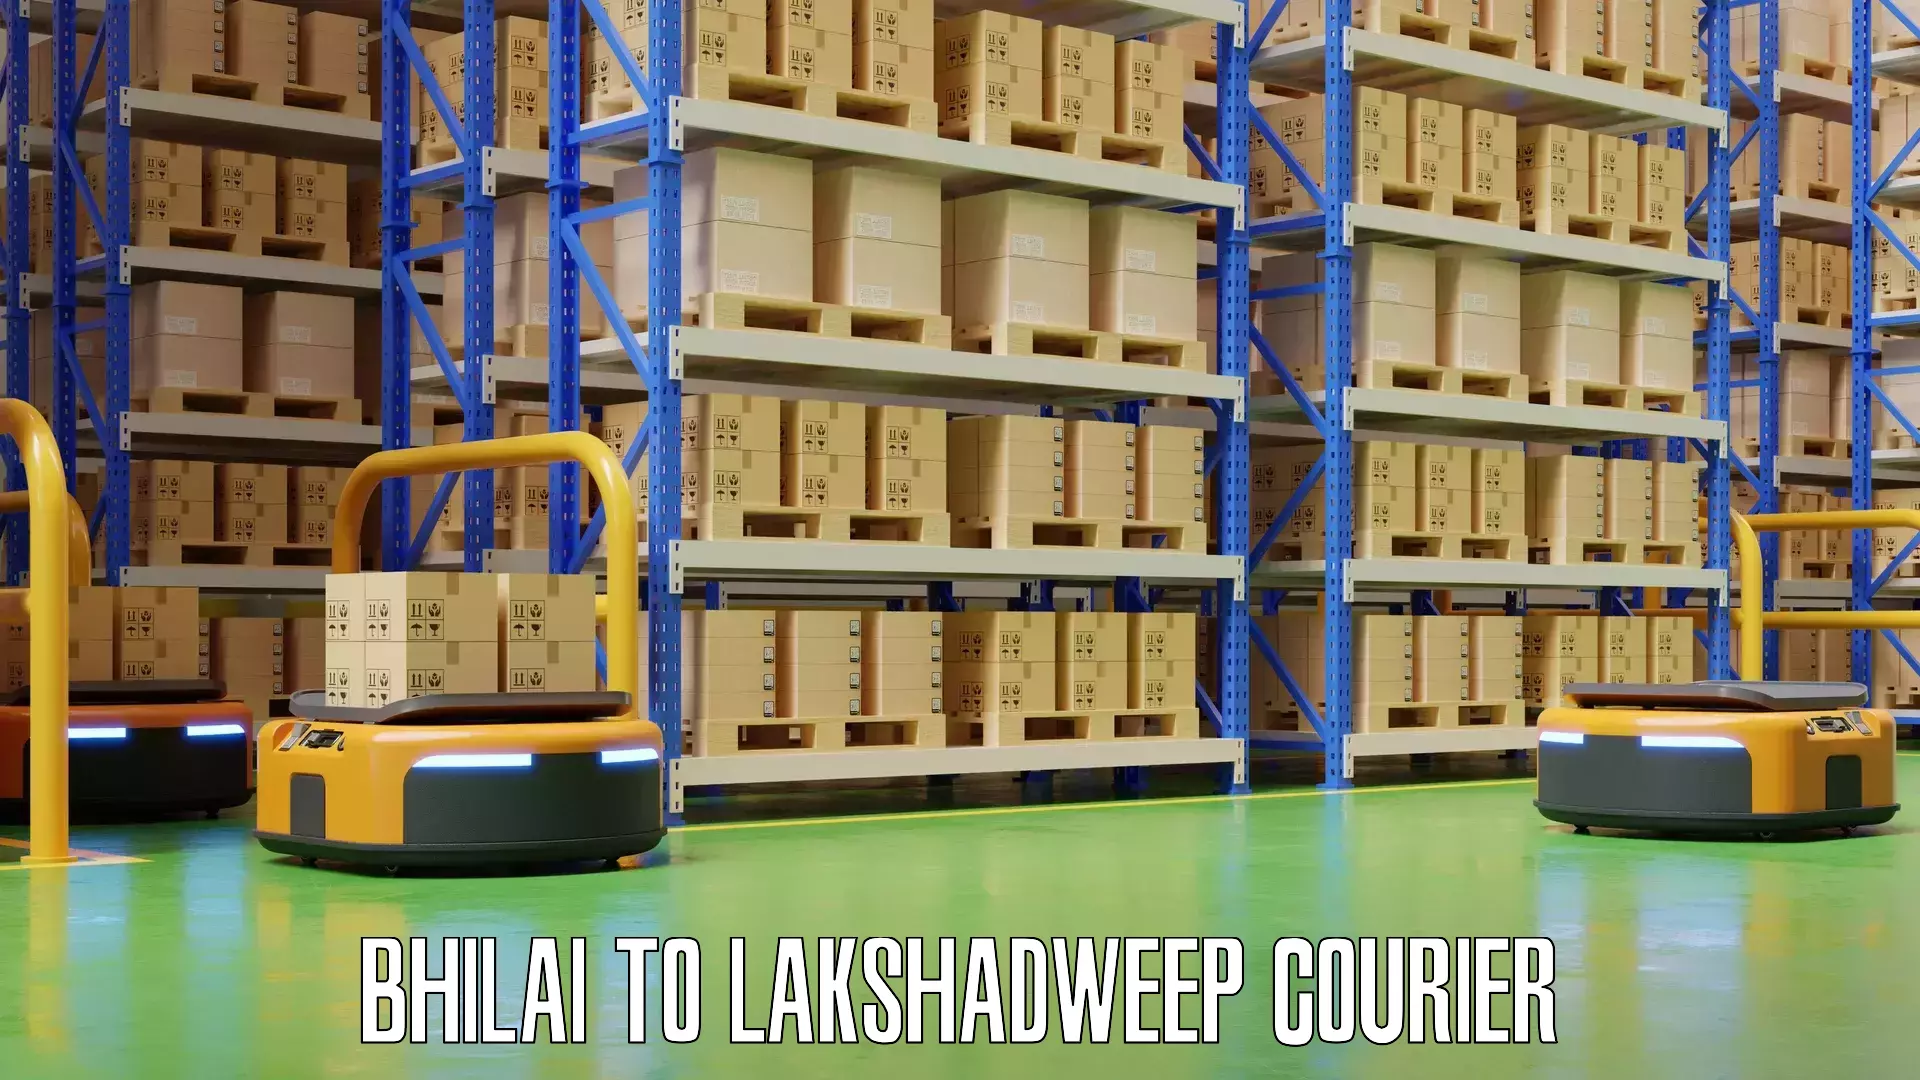 Luggage transport company Bhilai to Lakshadweep